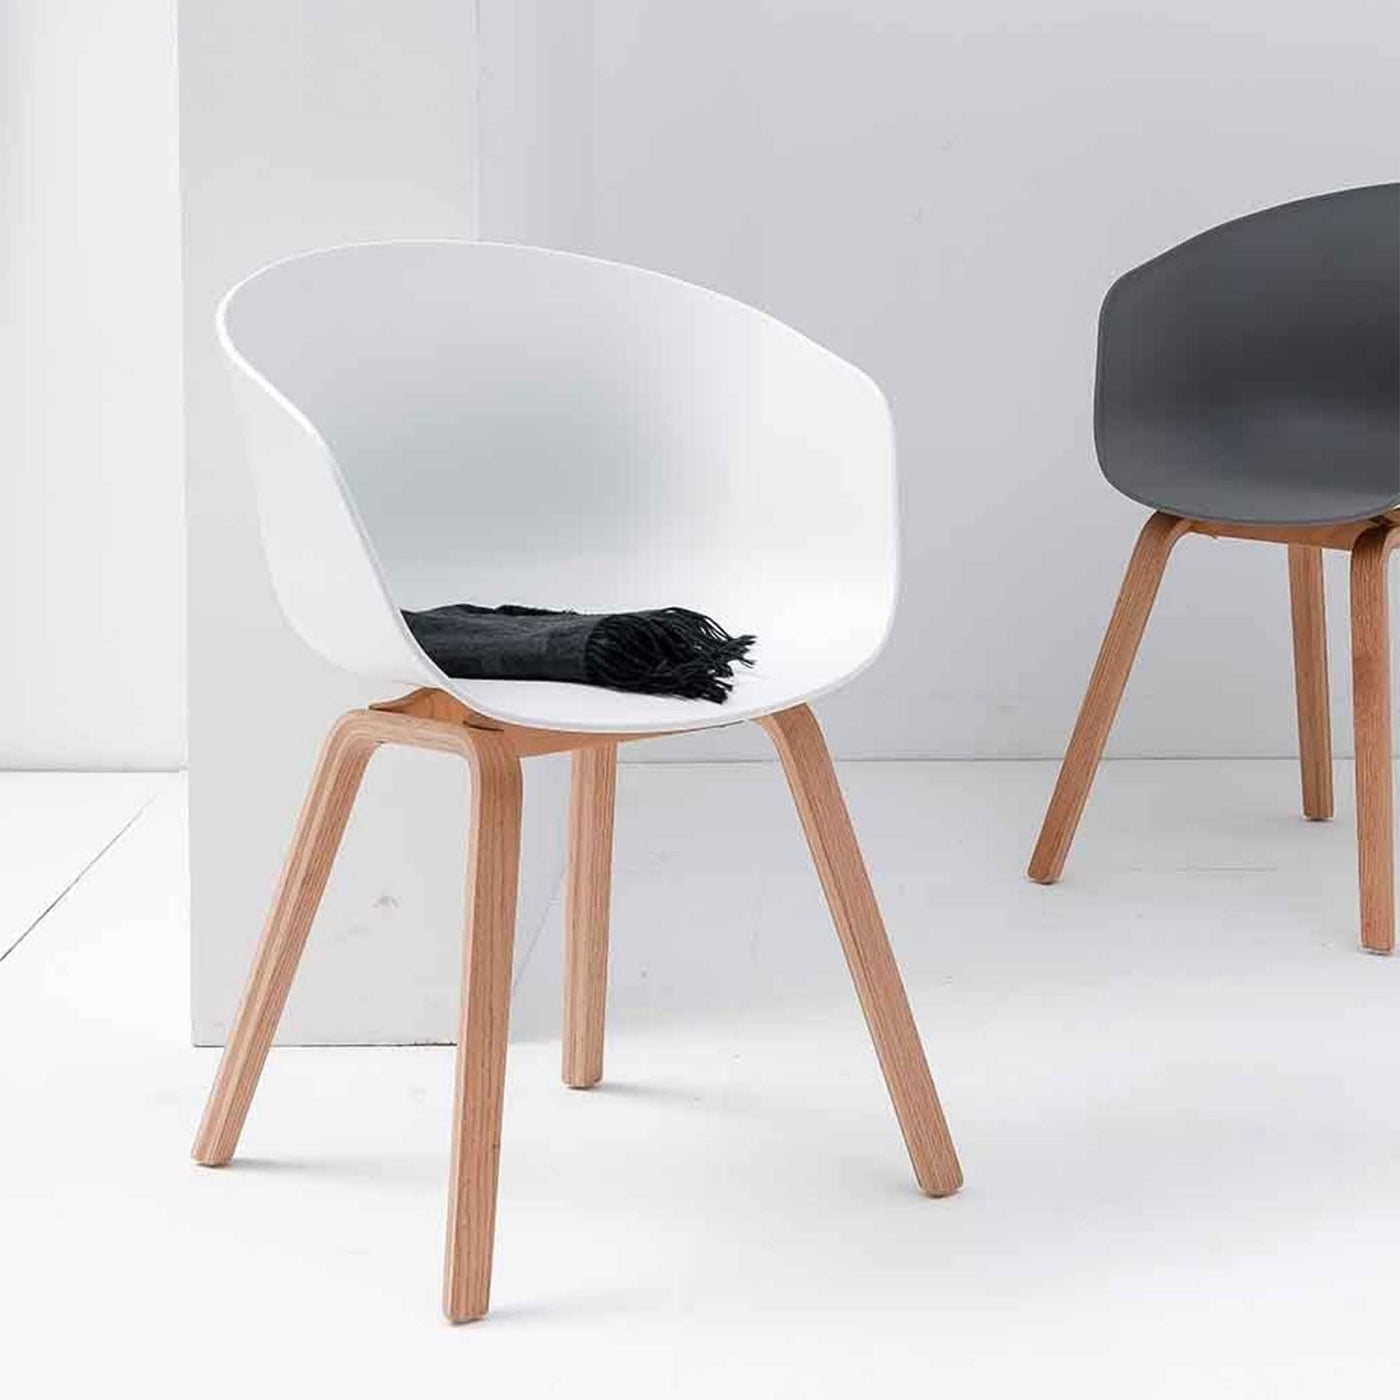 La chaise à dîner Capitaine About 22 : icône du design contemporain, elle marie formes accueillantes et ergonomiques. Polyvalente, elle s'intègre avec grâce autour d'une table, dans un salon ou devant un bureau.